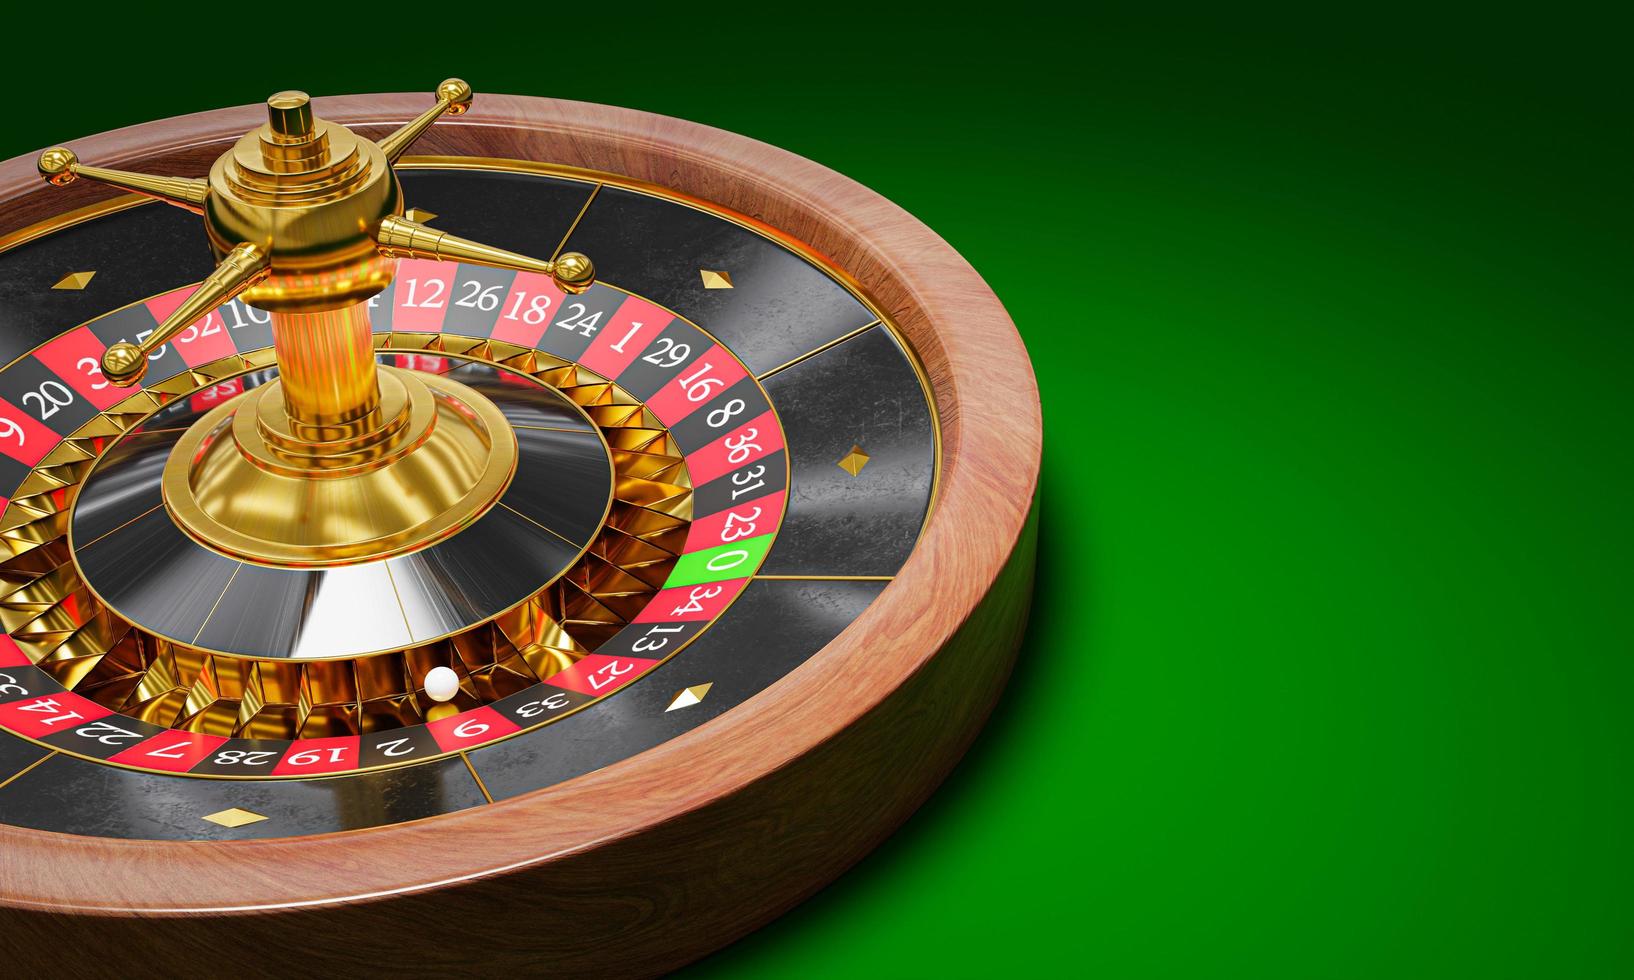 Jetzt können Sie das casinos Ihrer Träume haben – billiger/schneller als Sie es sich je vorgestellt haben